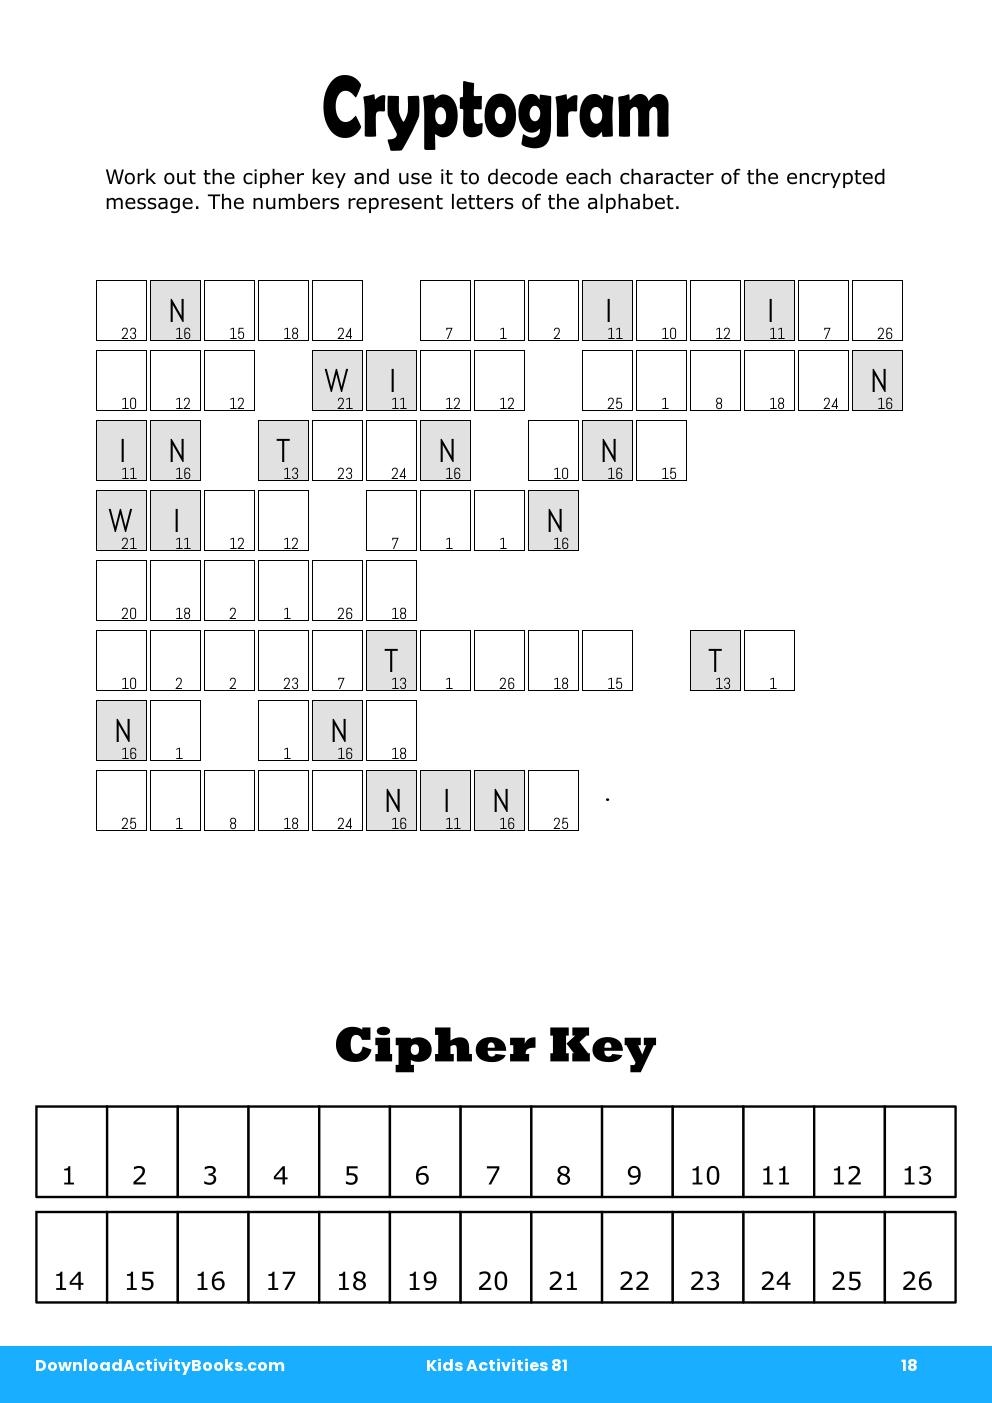 Cryptogram in Kids Activities 81